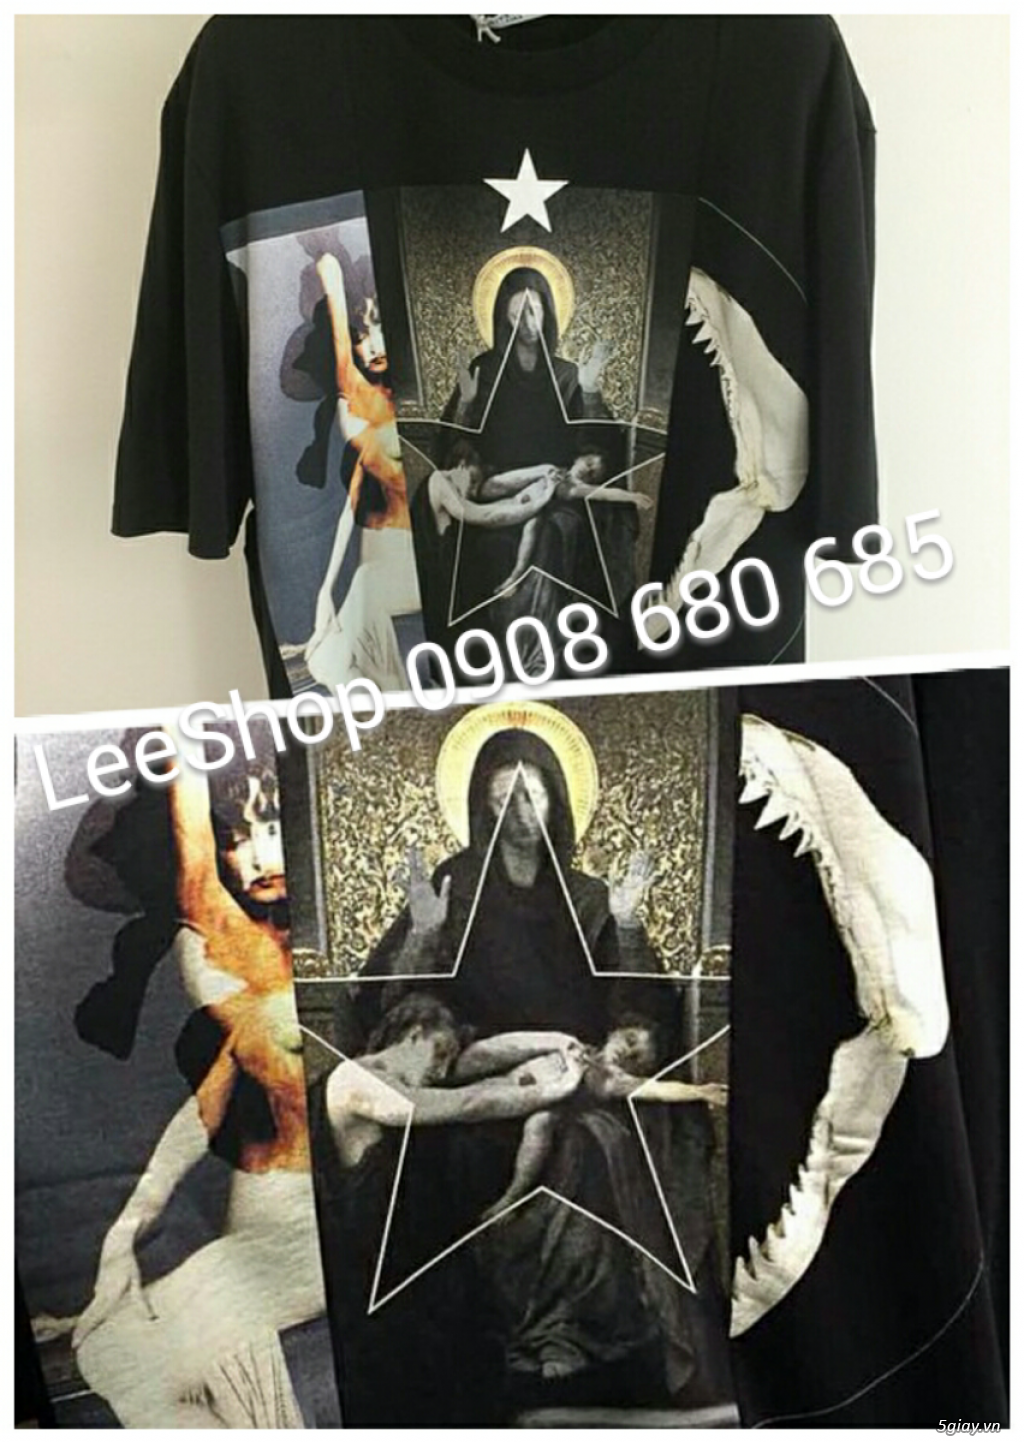 LeeShop_Chuyên quần áo thời trang - giá tốt nhất 5giay.vn - 11